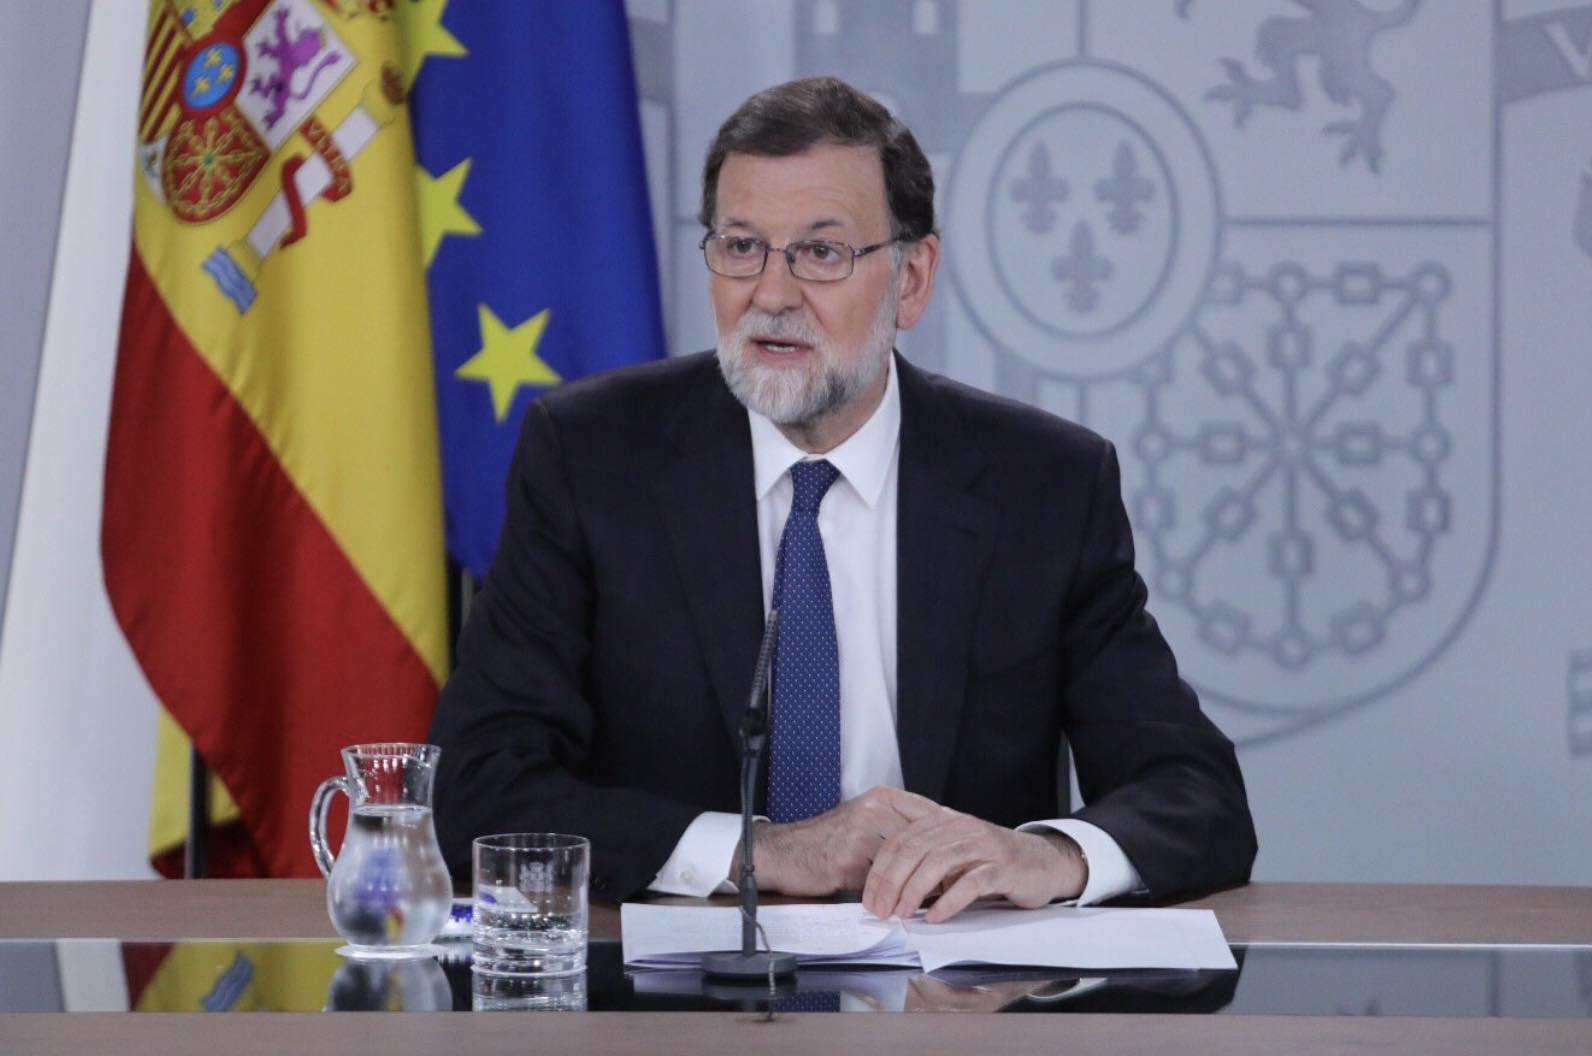 El presidente Rajoy, este viernes pasado en rueda de prensa. FOTO: Twitter de M. Rajoy.